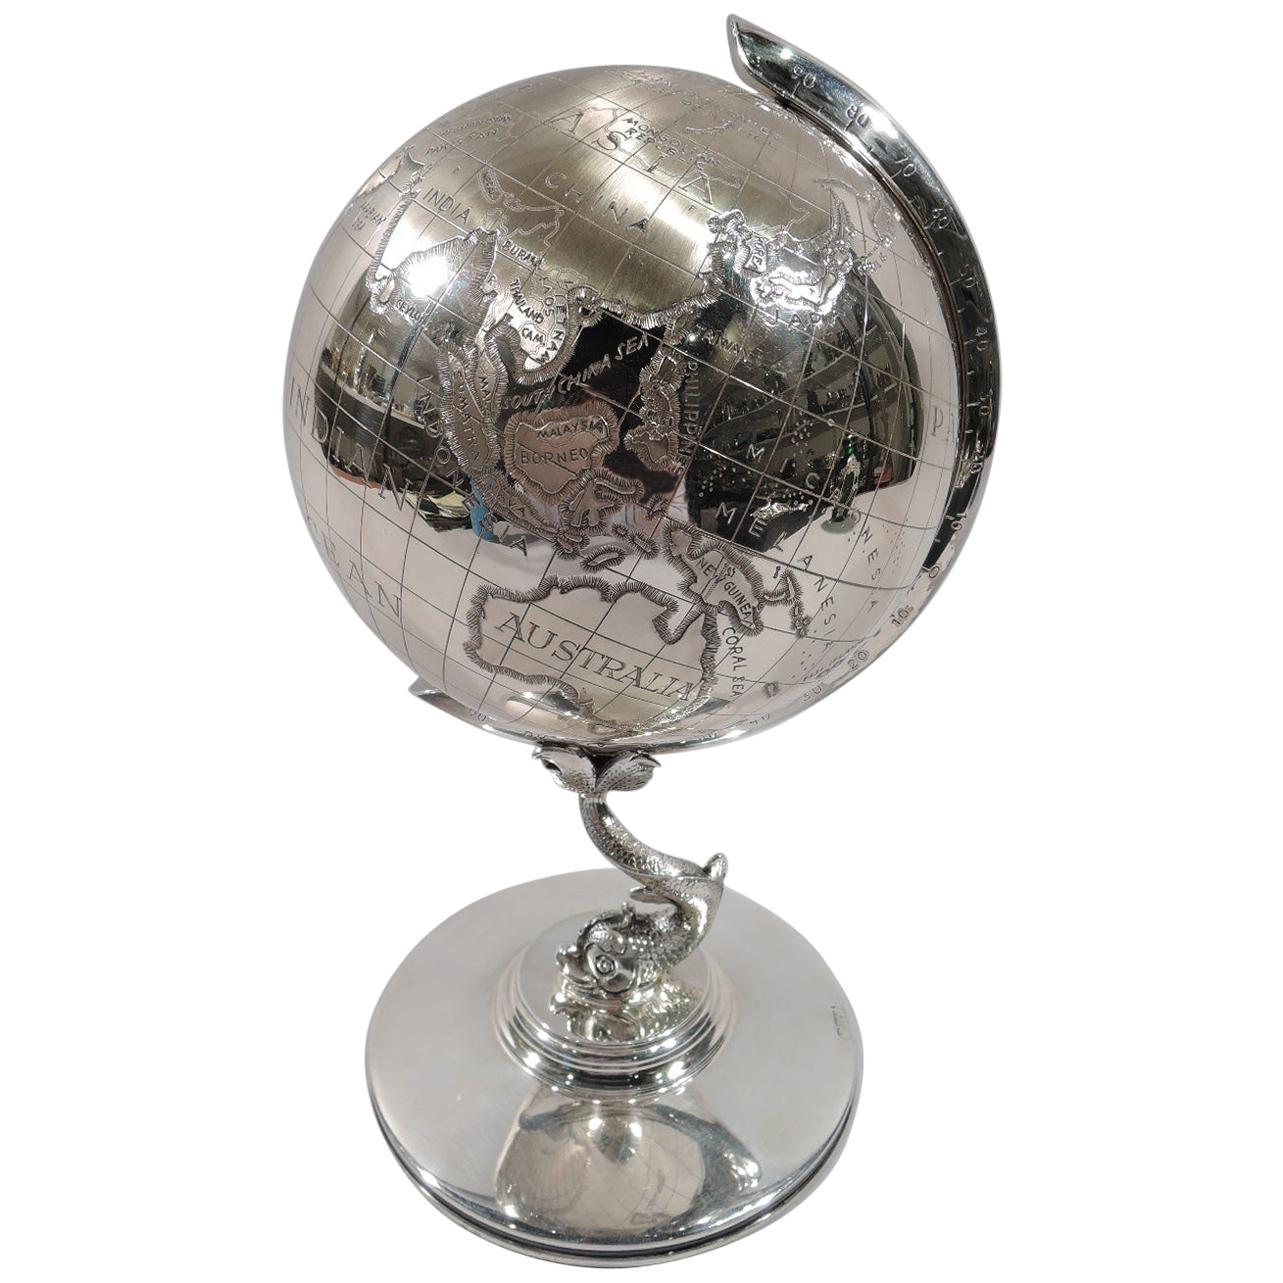 For Office Détente Cold War-Era Sterling Silver Desk Globe